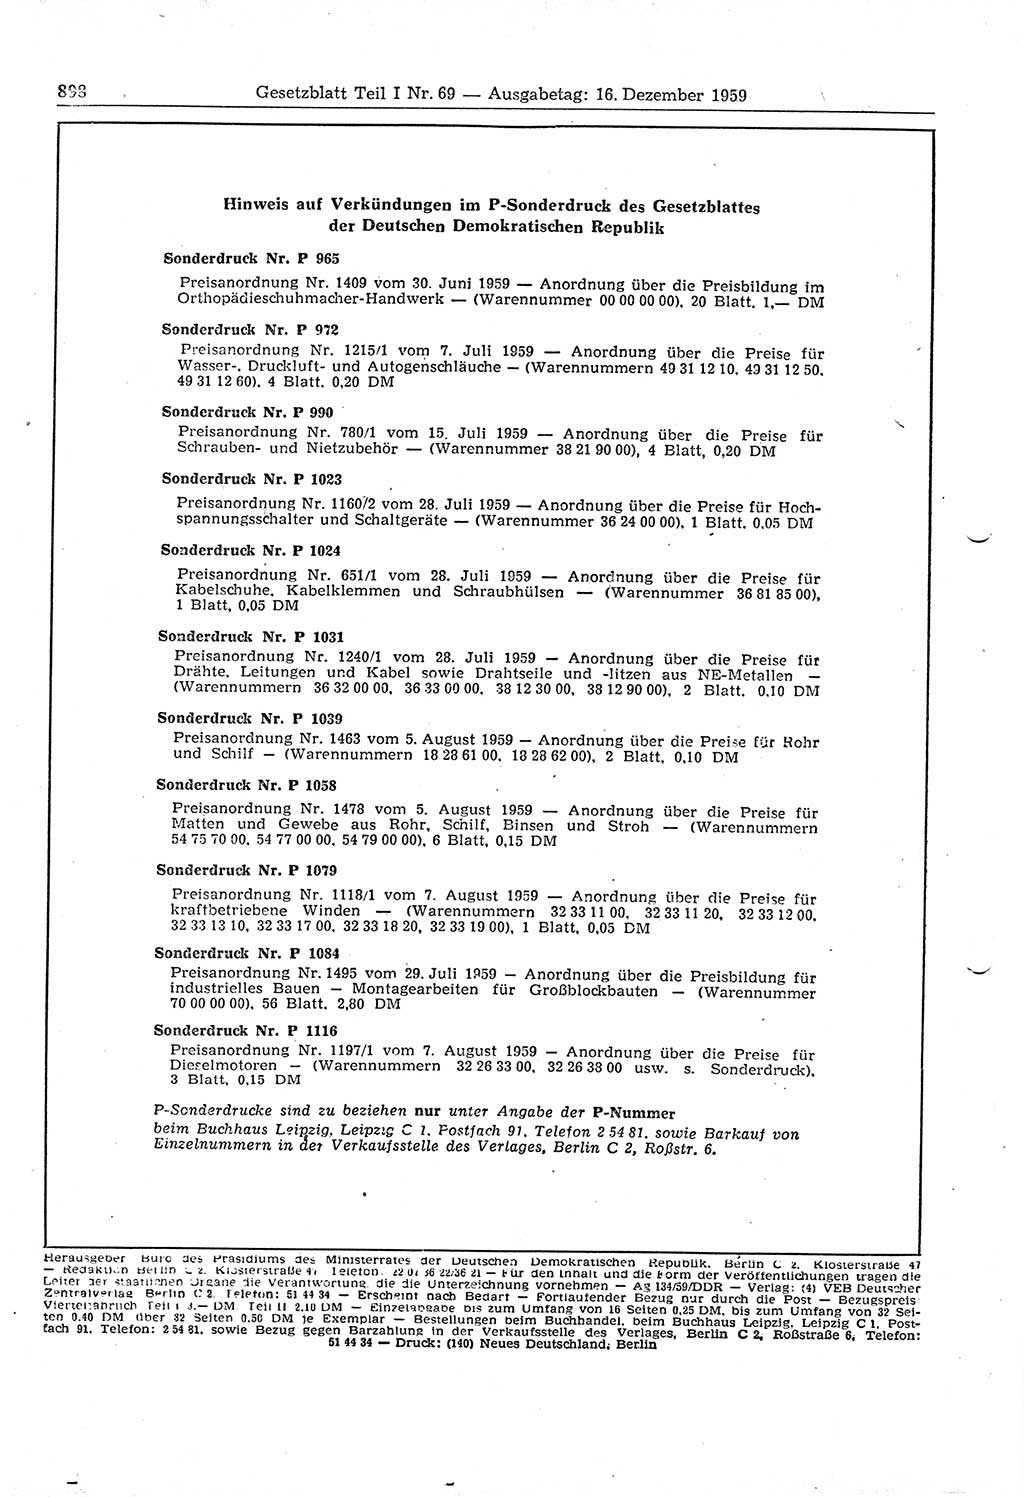 Gesetzblatt (GBl.) der Deutschen Demokratischen Republik (DDR) Teil Ⅰ 1959, Seite 898 (GBl. DDR Ⅰ 1959, S. 898)